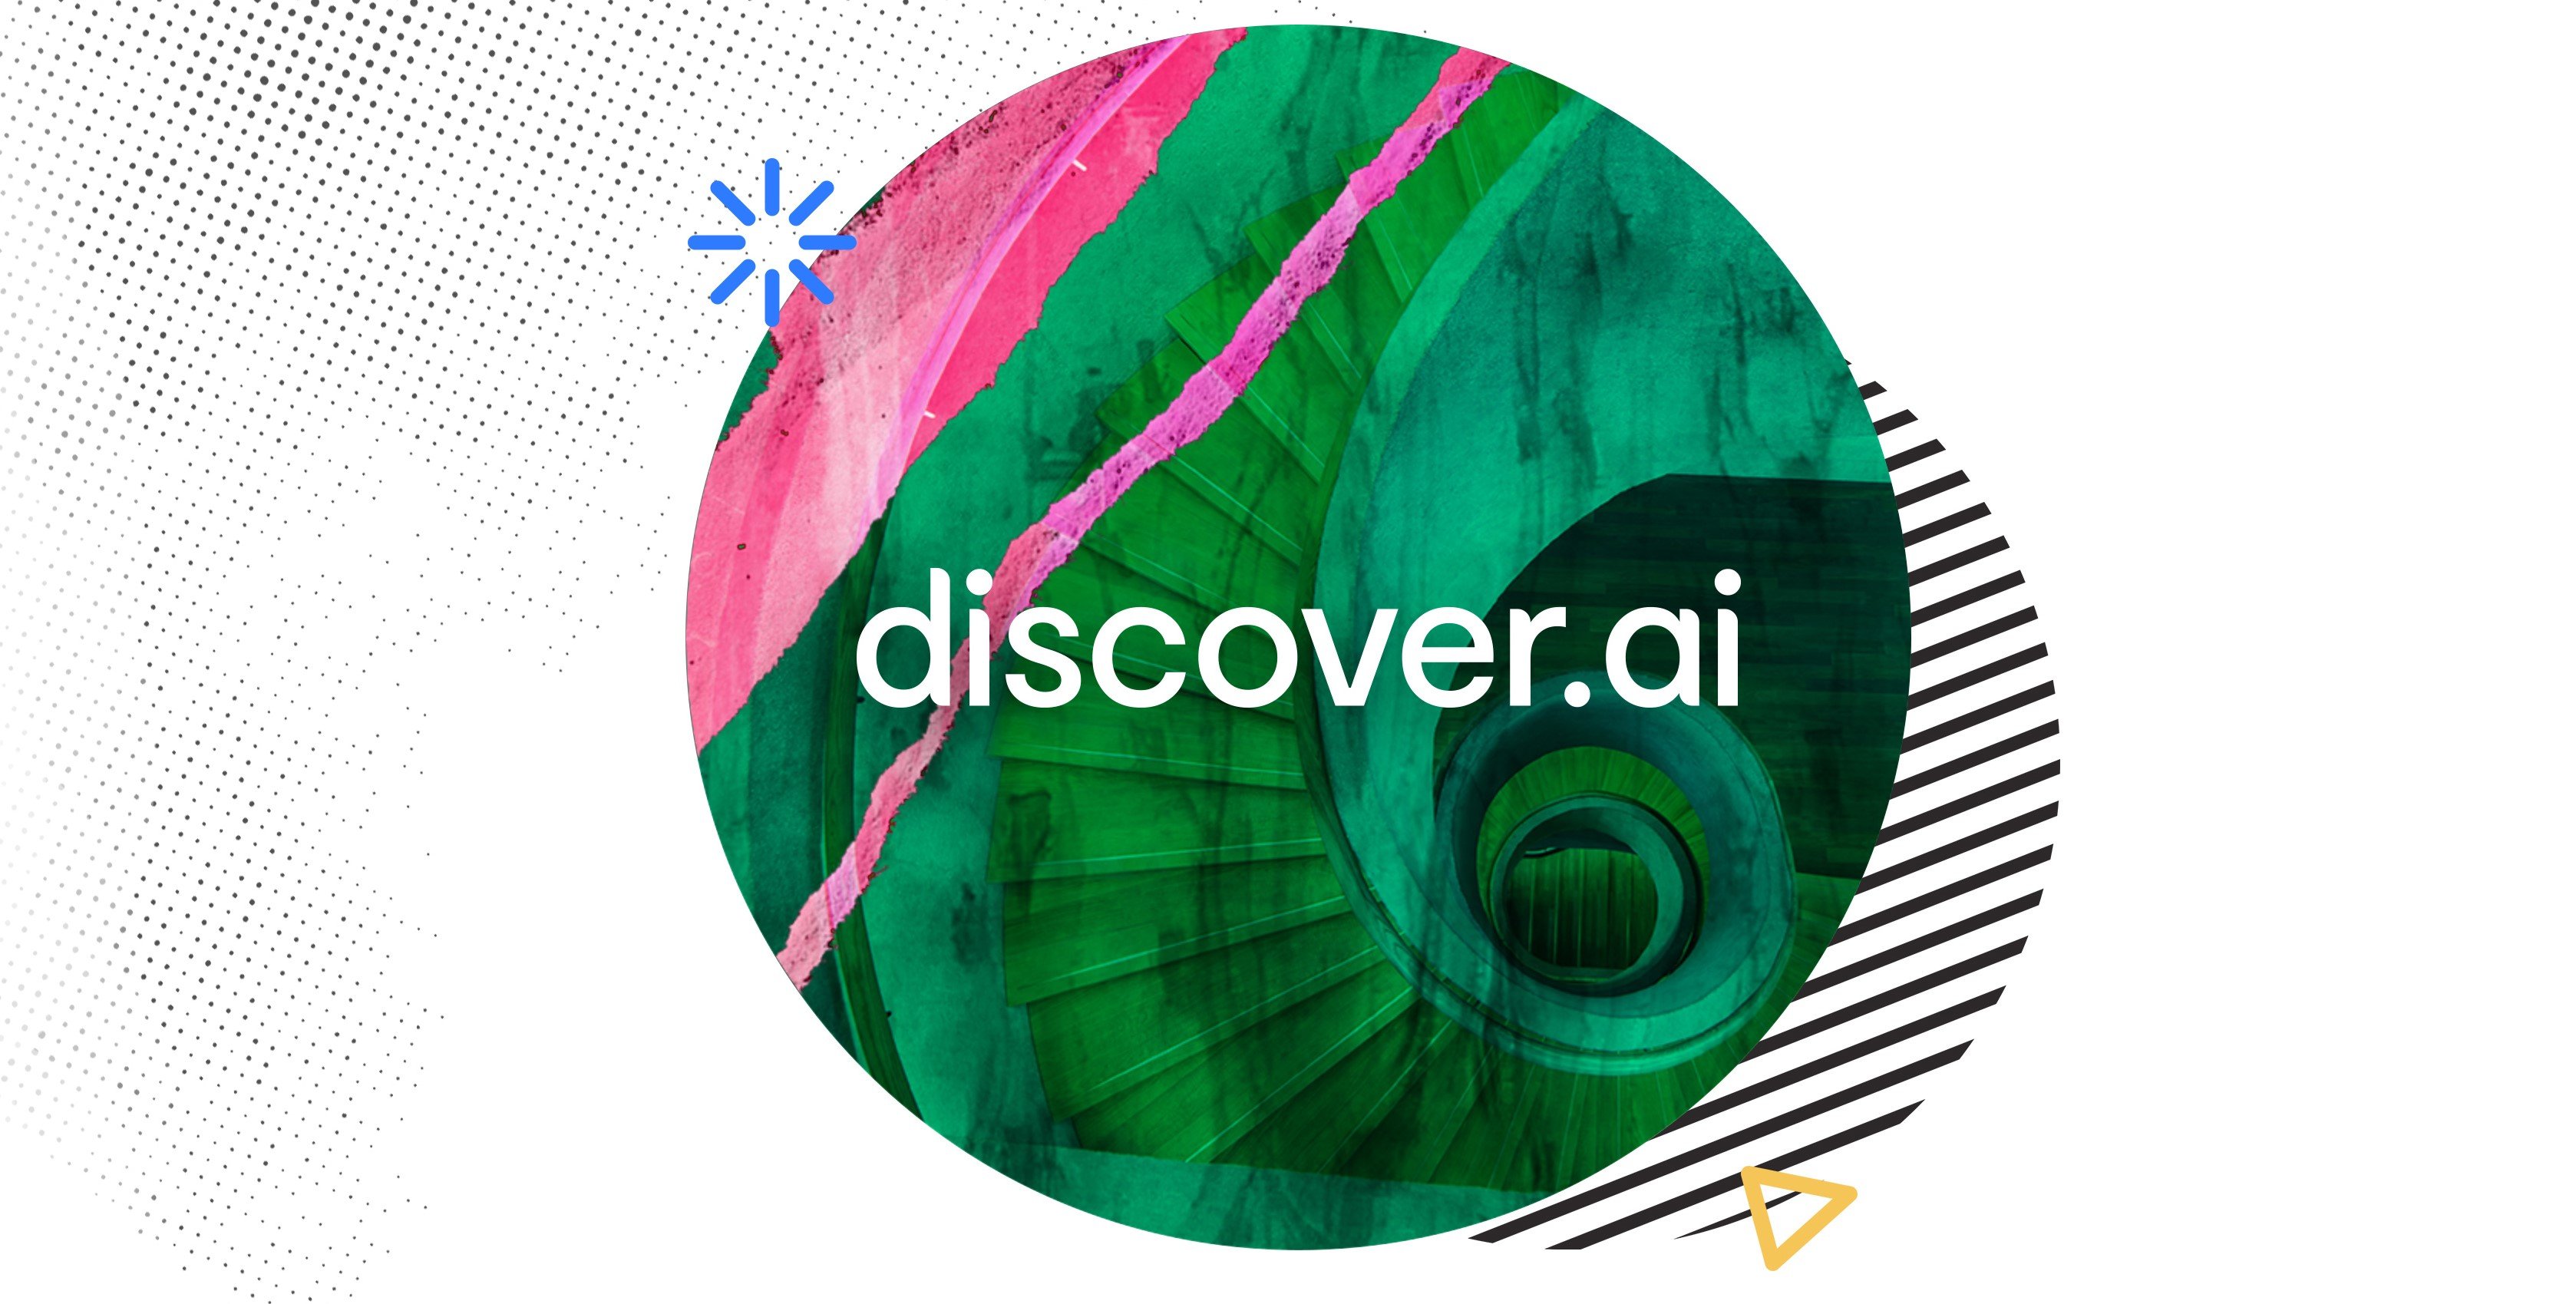 discover.ai logo